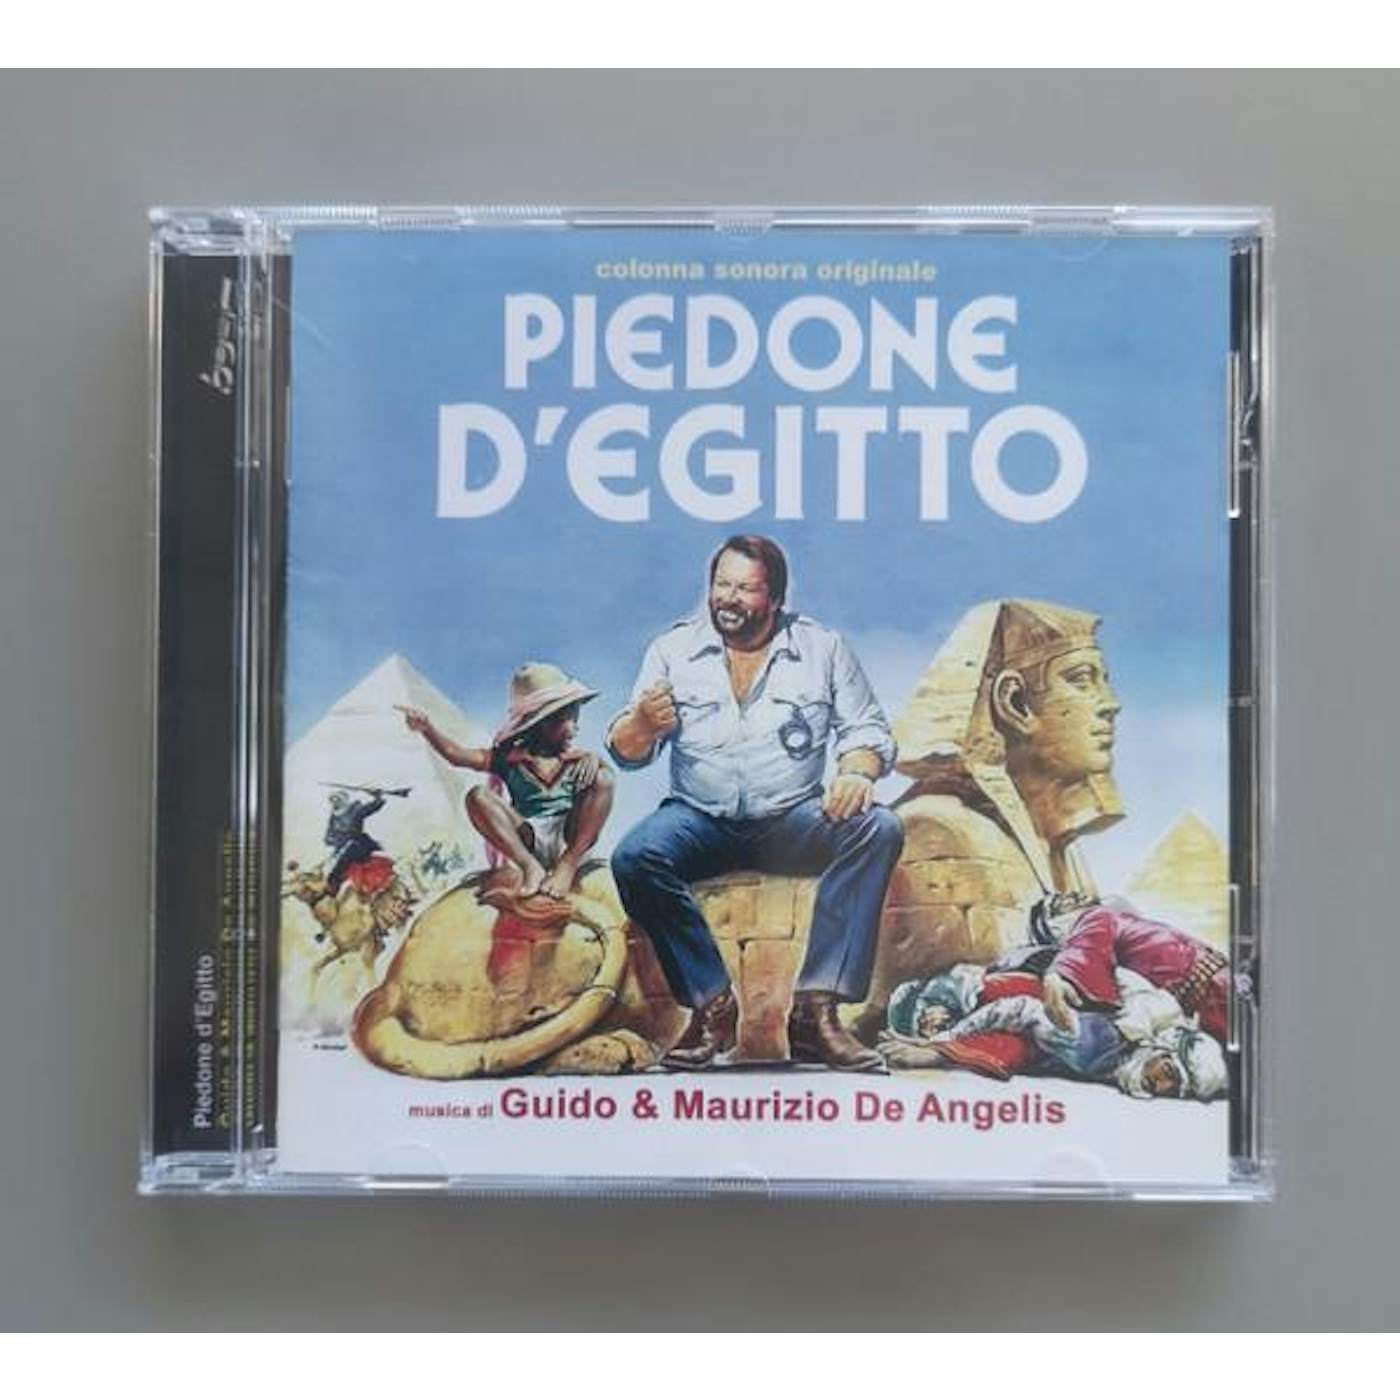 Guido & Maurizio De Angelis PIEDONE D'EGITTO - Original Soundtrack CD